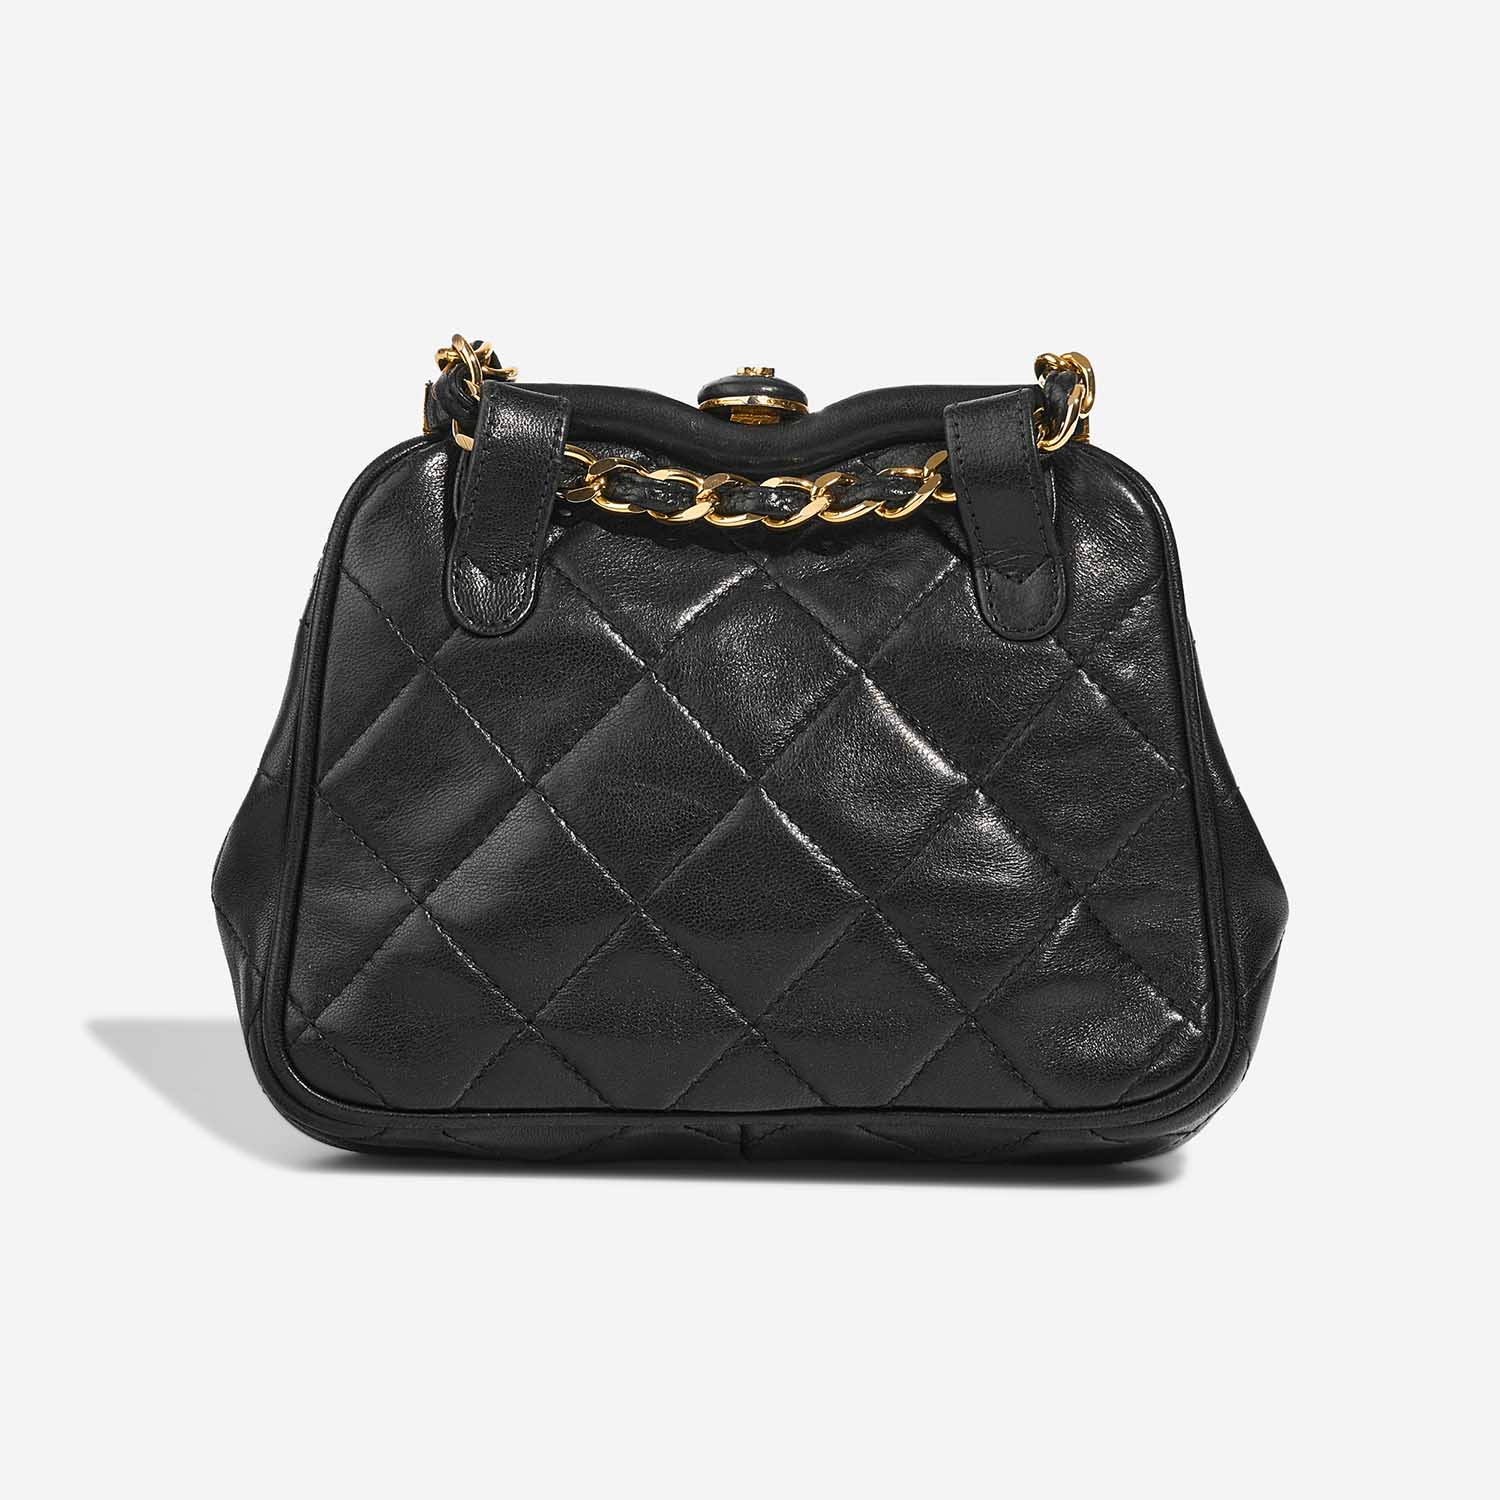 Chanel TimelessBeltBag OneSize Black Back | Verkaufen Sie Ihre Designer-Tasche auf Saclab.com